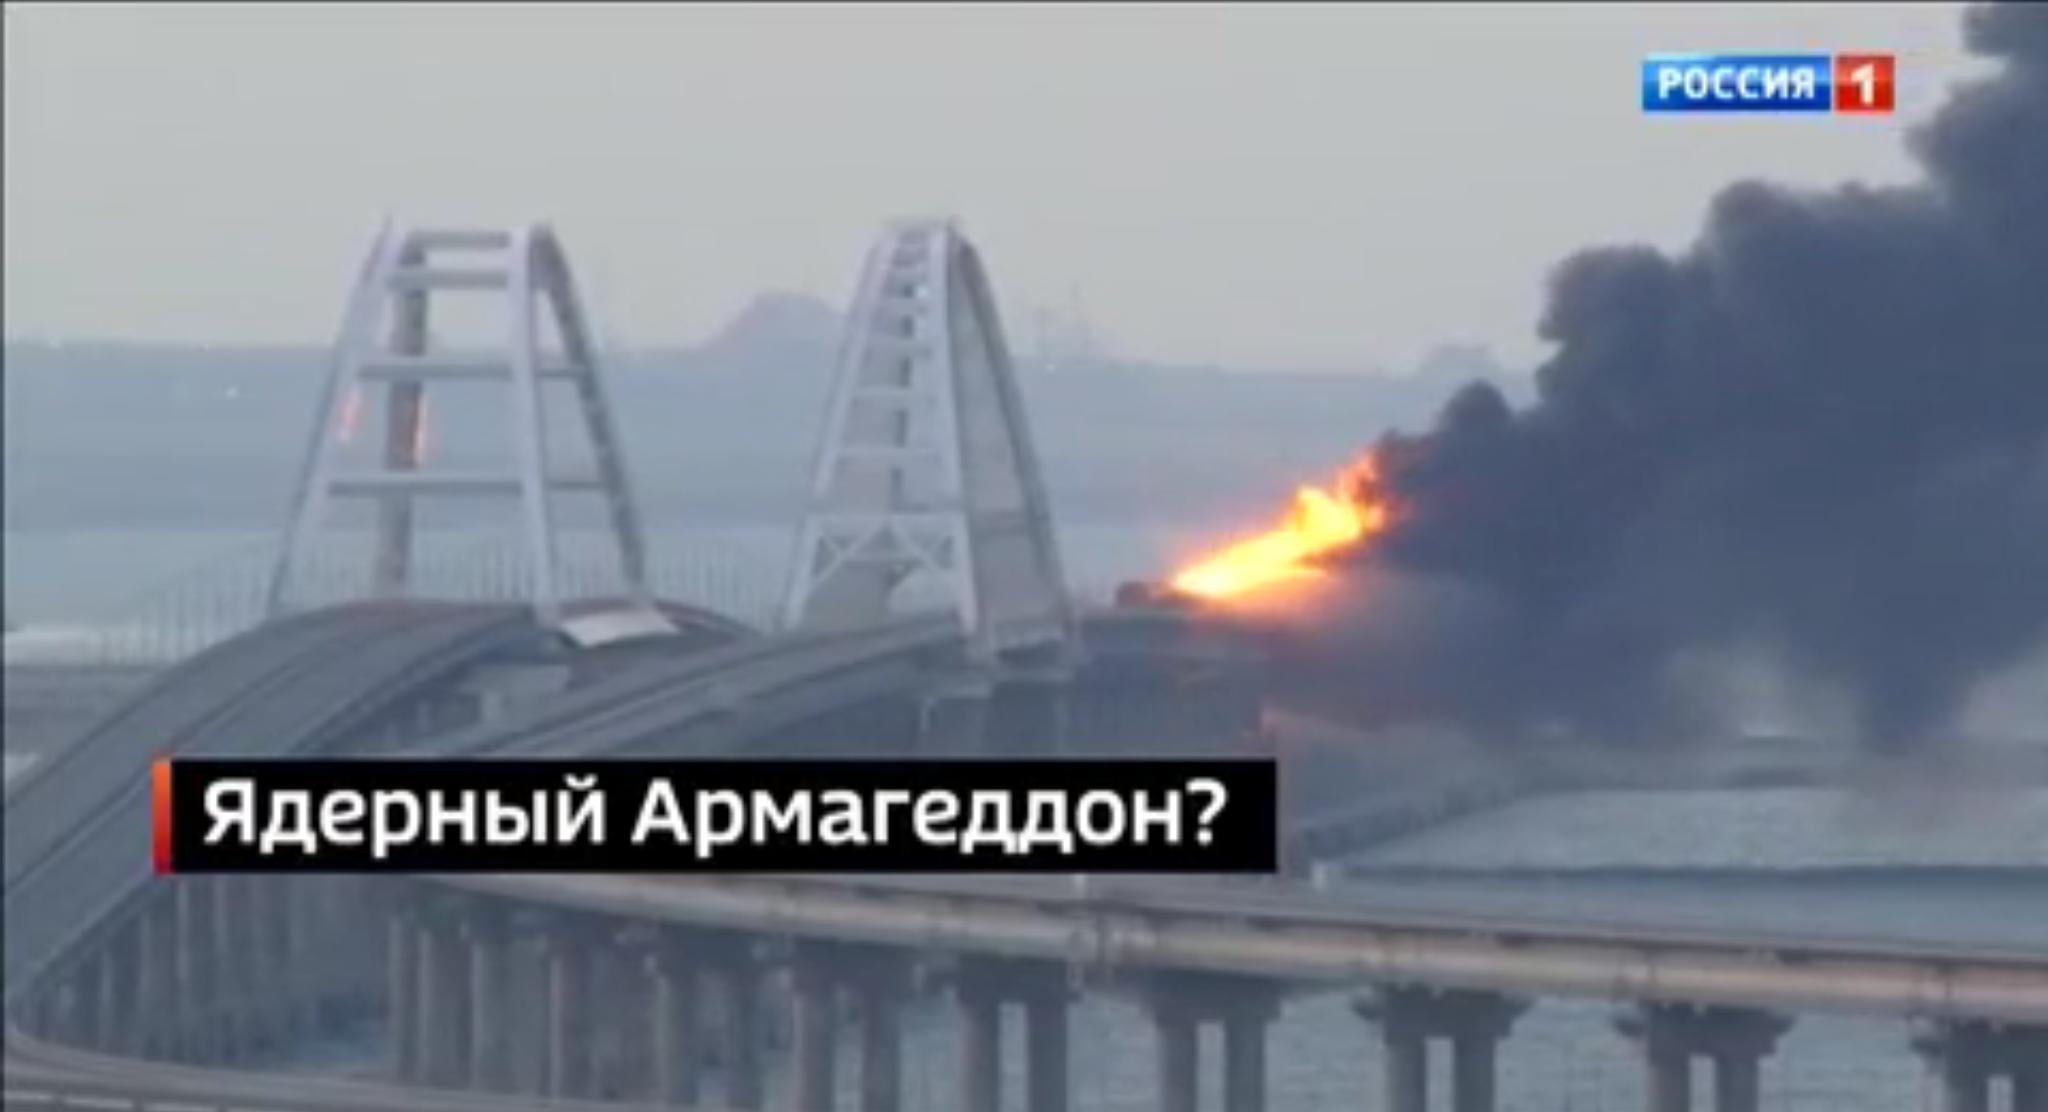 Zdjęcie płonącego mostu krymskiego z rosyjskim napisem “Atomowy Armageddon?”